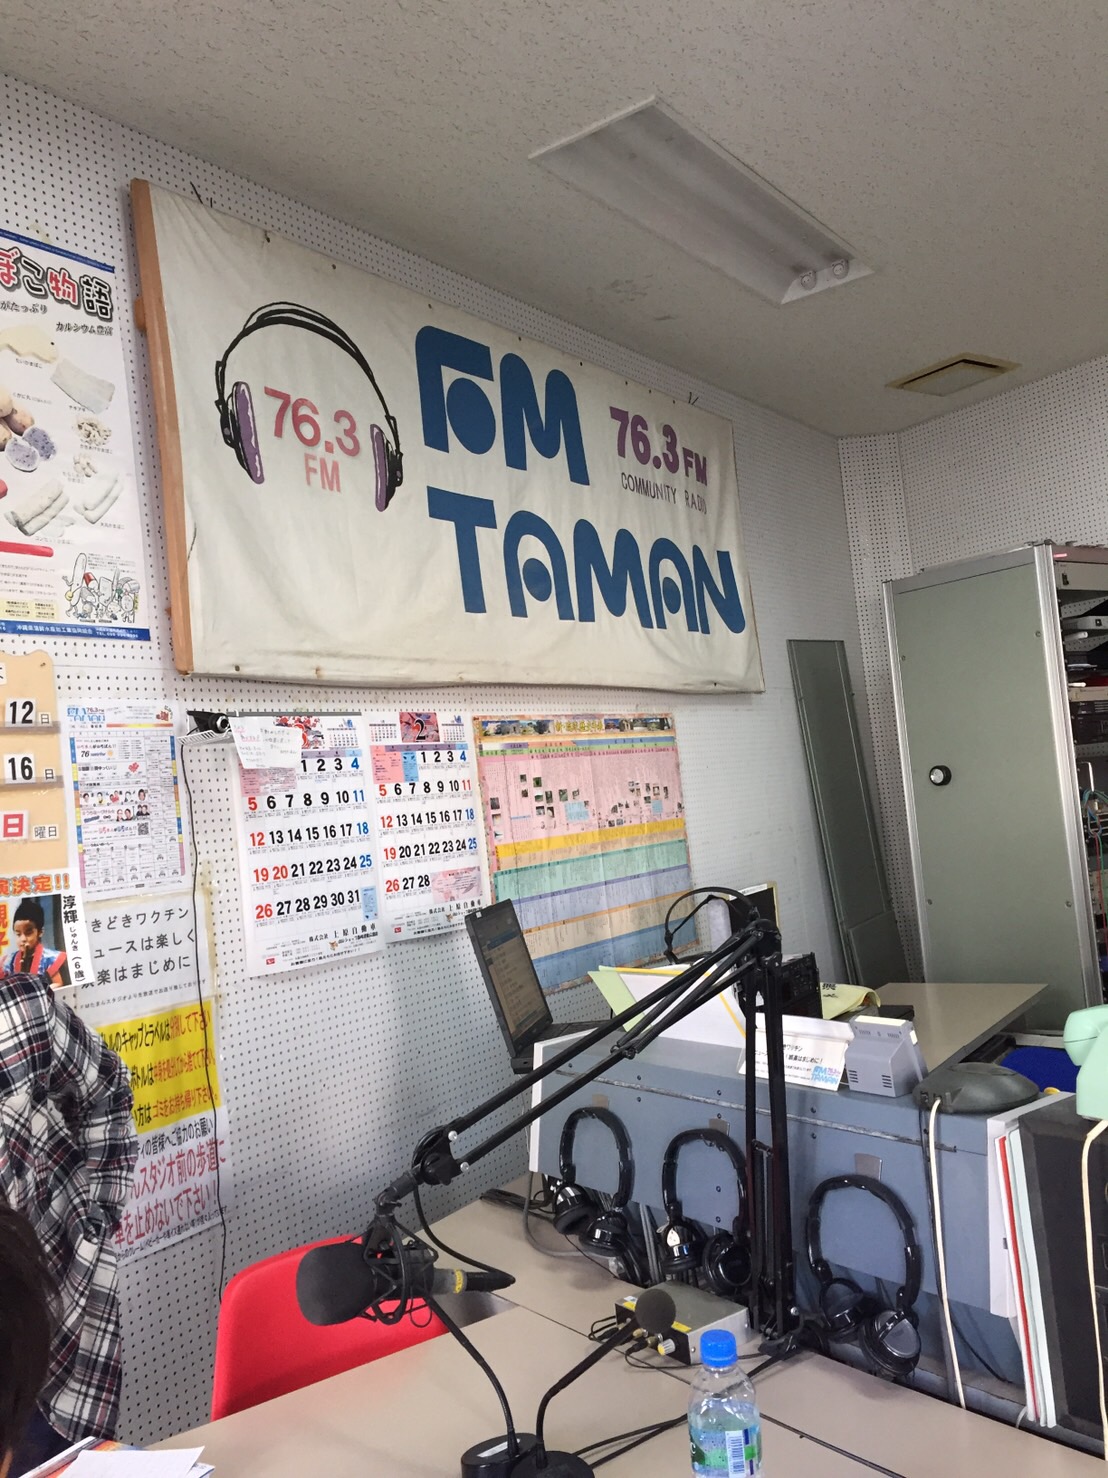 沖縄のラジオ「FMたまん」